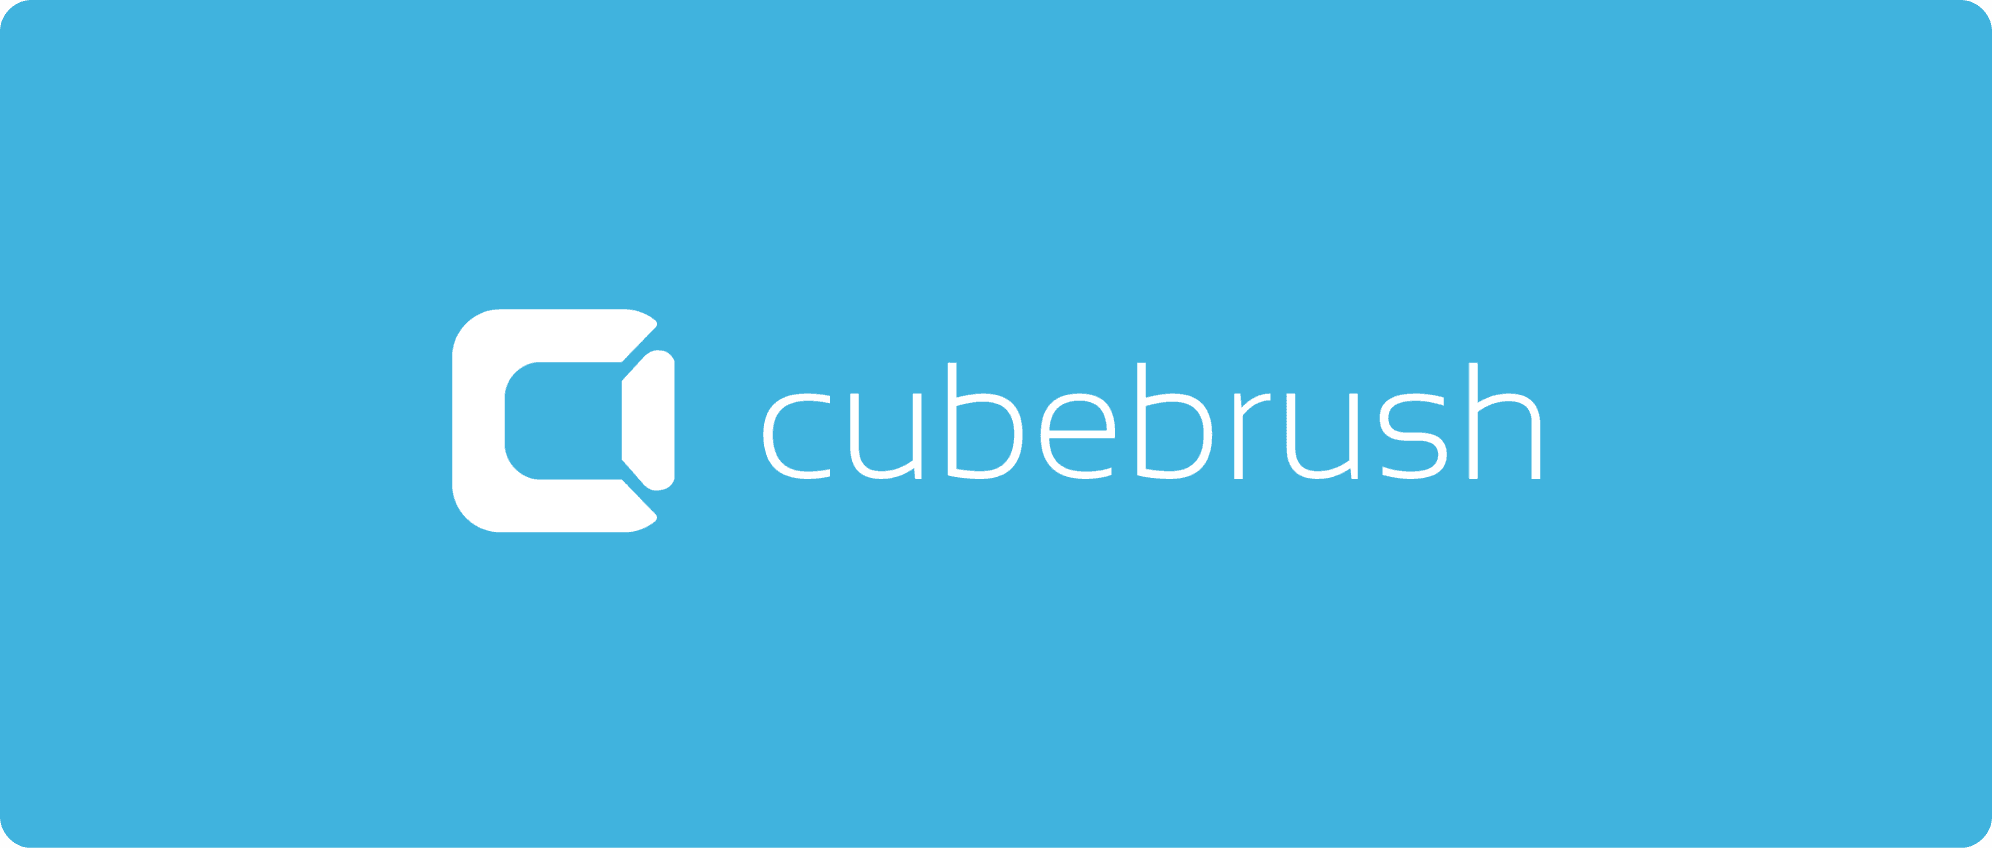 cubebrush logo